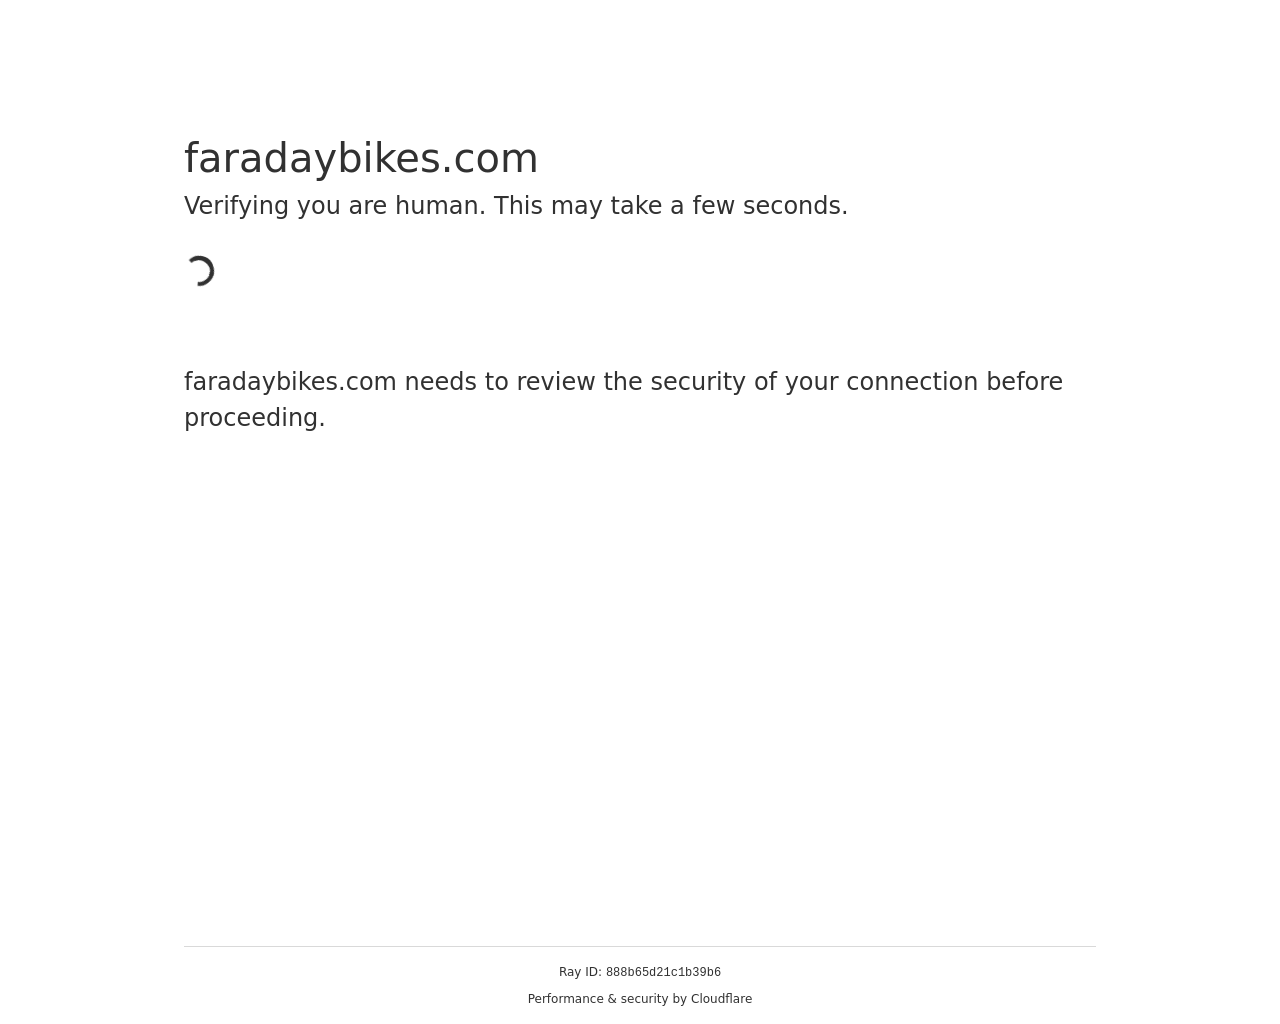 faradaybikes.com